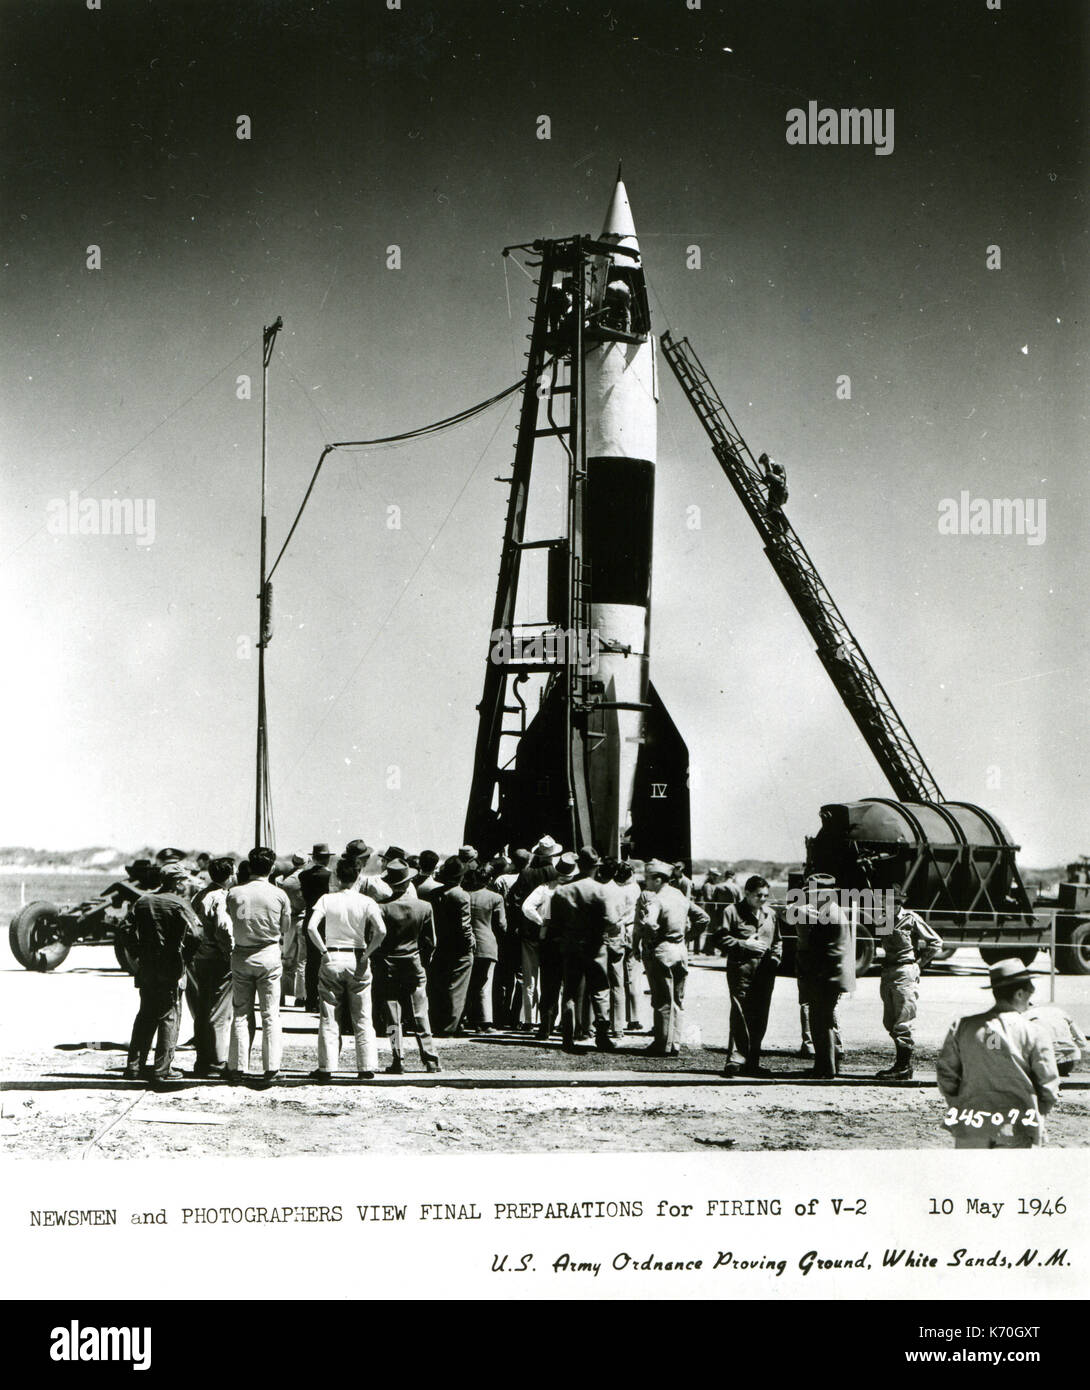 Journalisten und Fotografen, die letzten Vorbereitungen für die Entlassung der V-2-Rakete von der U.S. Army Ordnance Proving Ground, weiße sande, 'NM, 10. Mai 1946 Stockfoto